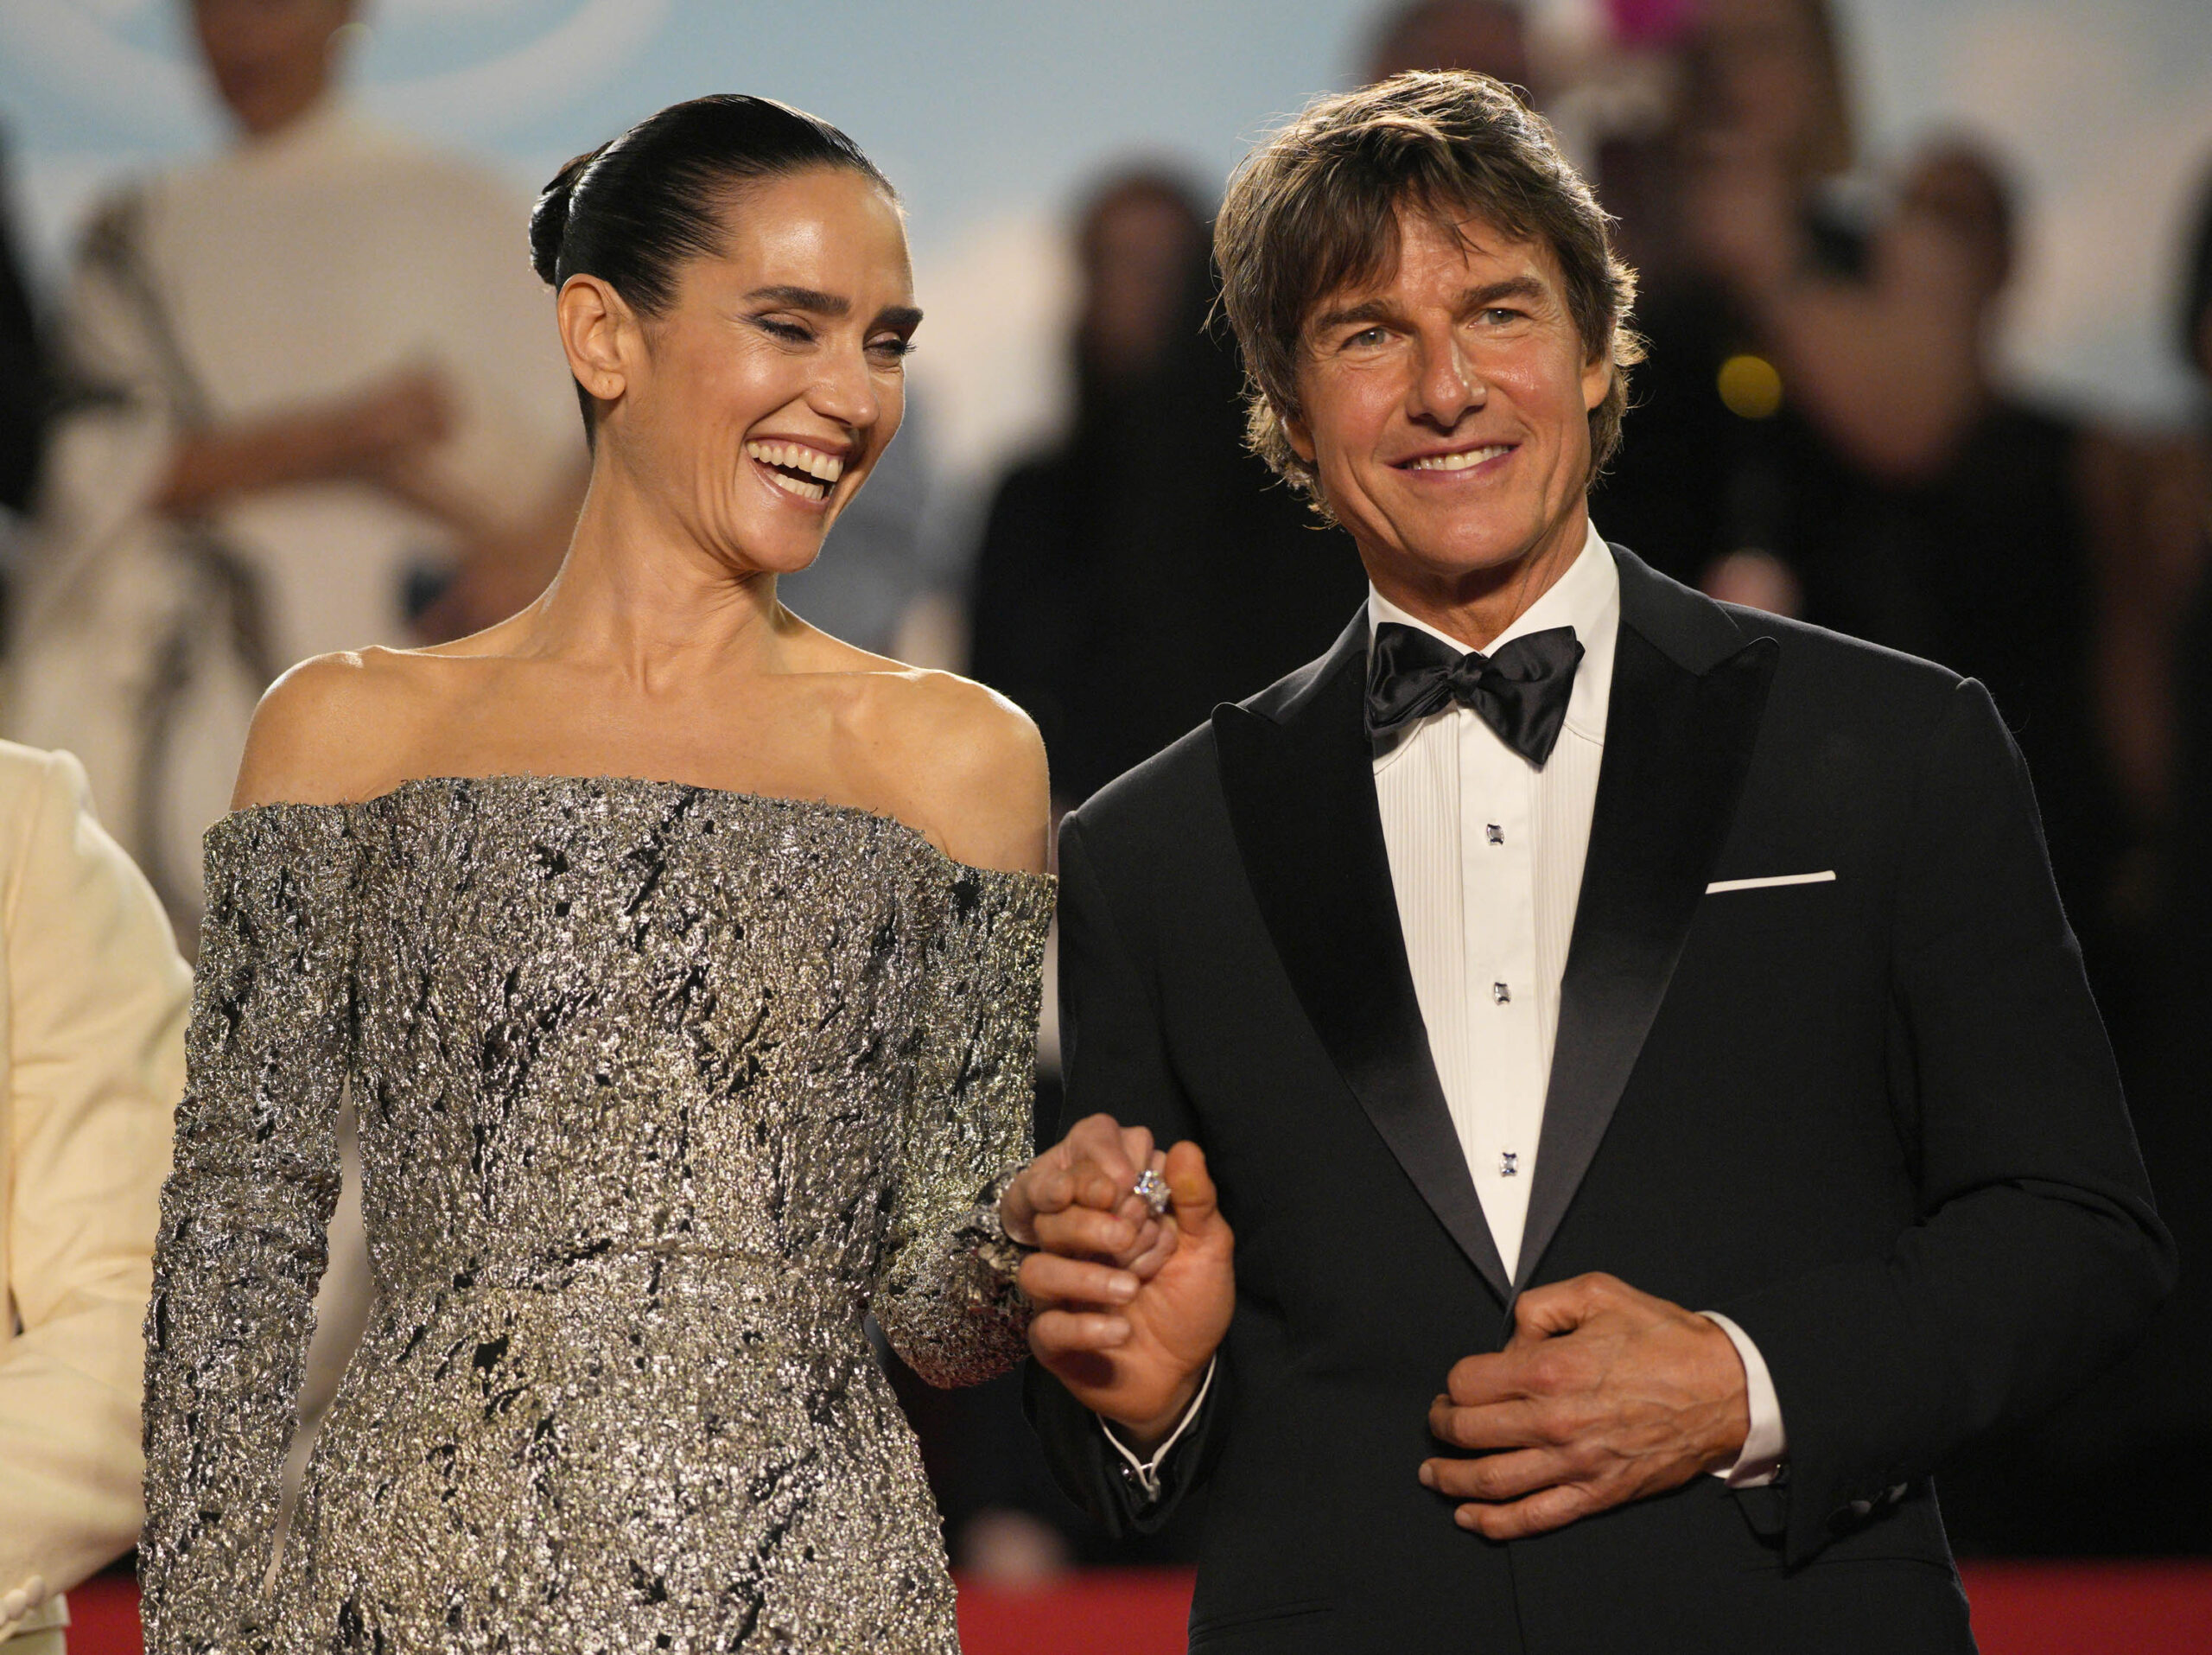 La stella di Tom Cruise splende sul Festival di Cannes – FOTOGALLERY